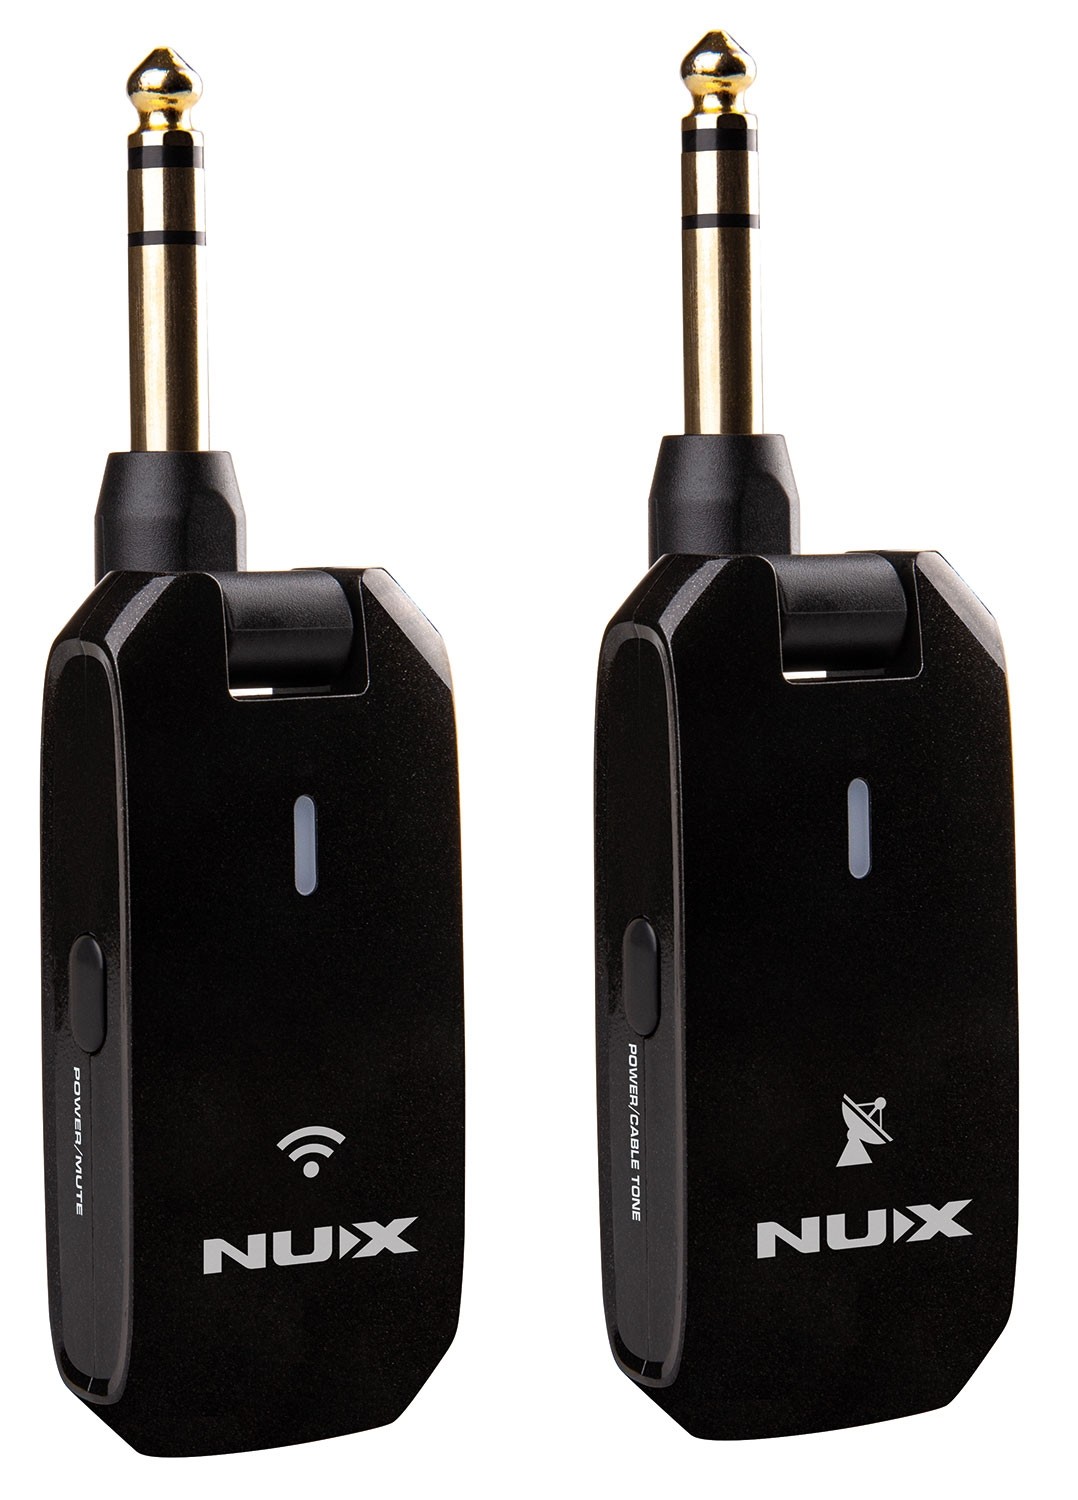 NU-X C-5RC 5.8GHz Wireless Guitar System